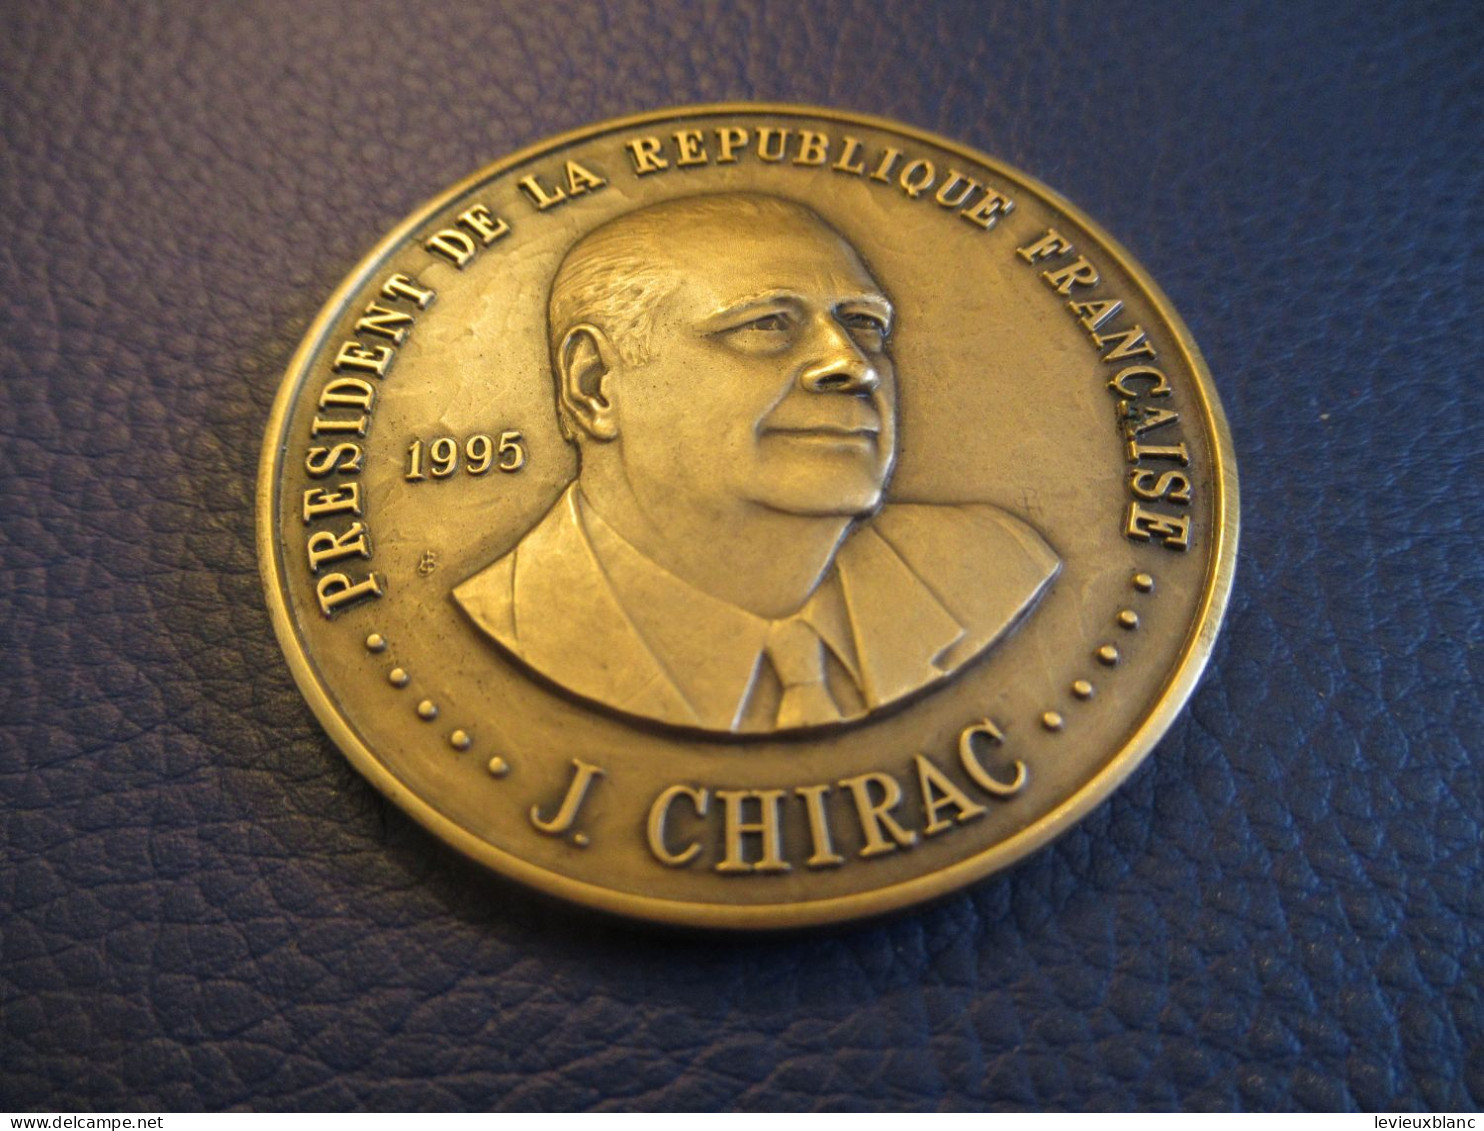 Médaille Commémorative/ J.CHIRAC  Président De La République Française/ Cinquiéme République 1958/1995        MED430 - France